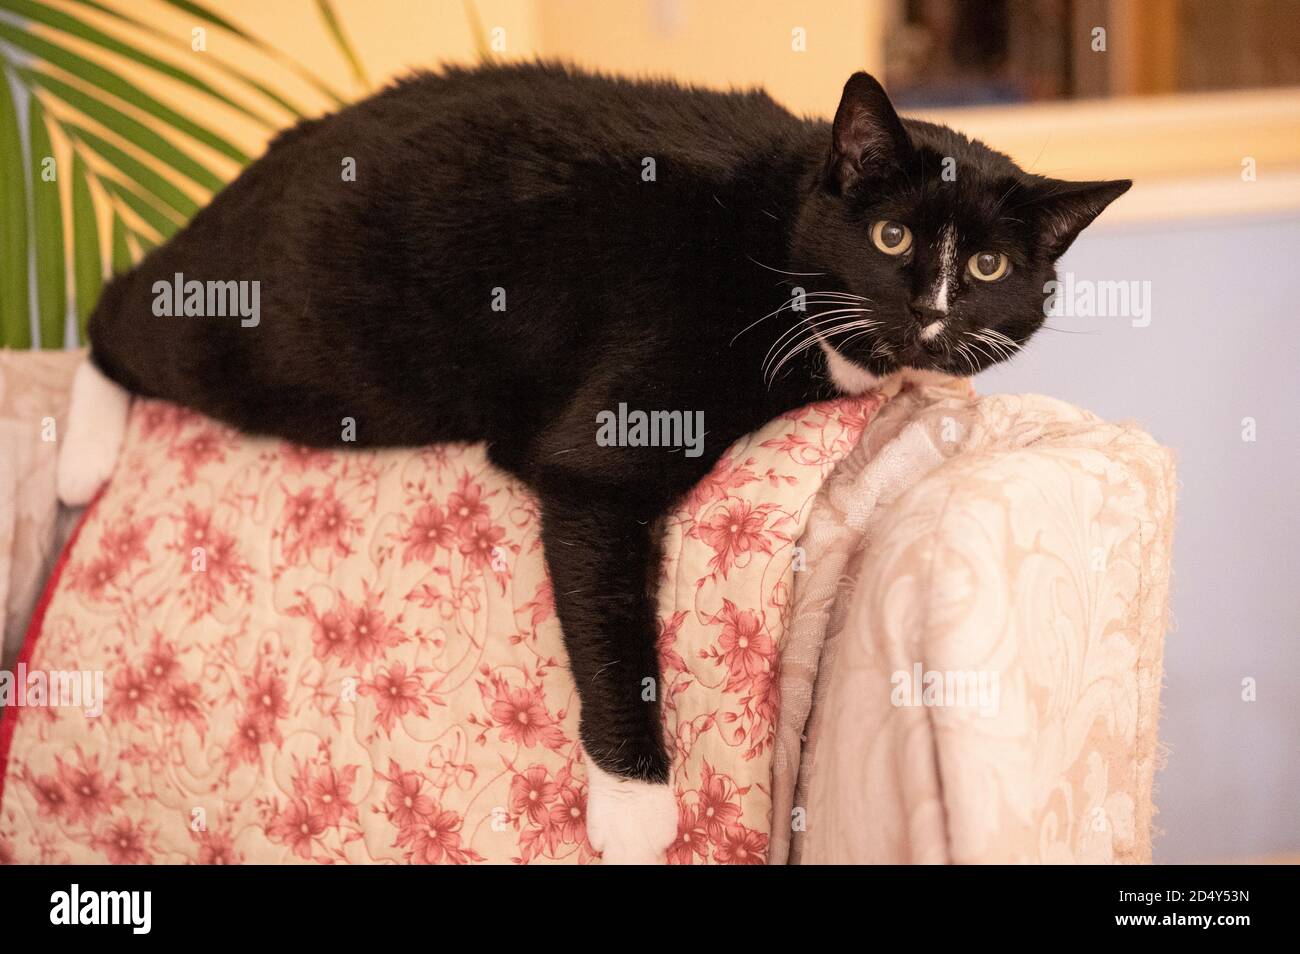 chat noir au dos de la chaise Banque D'Images